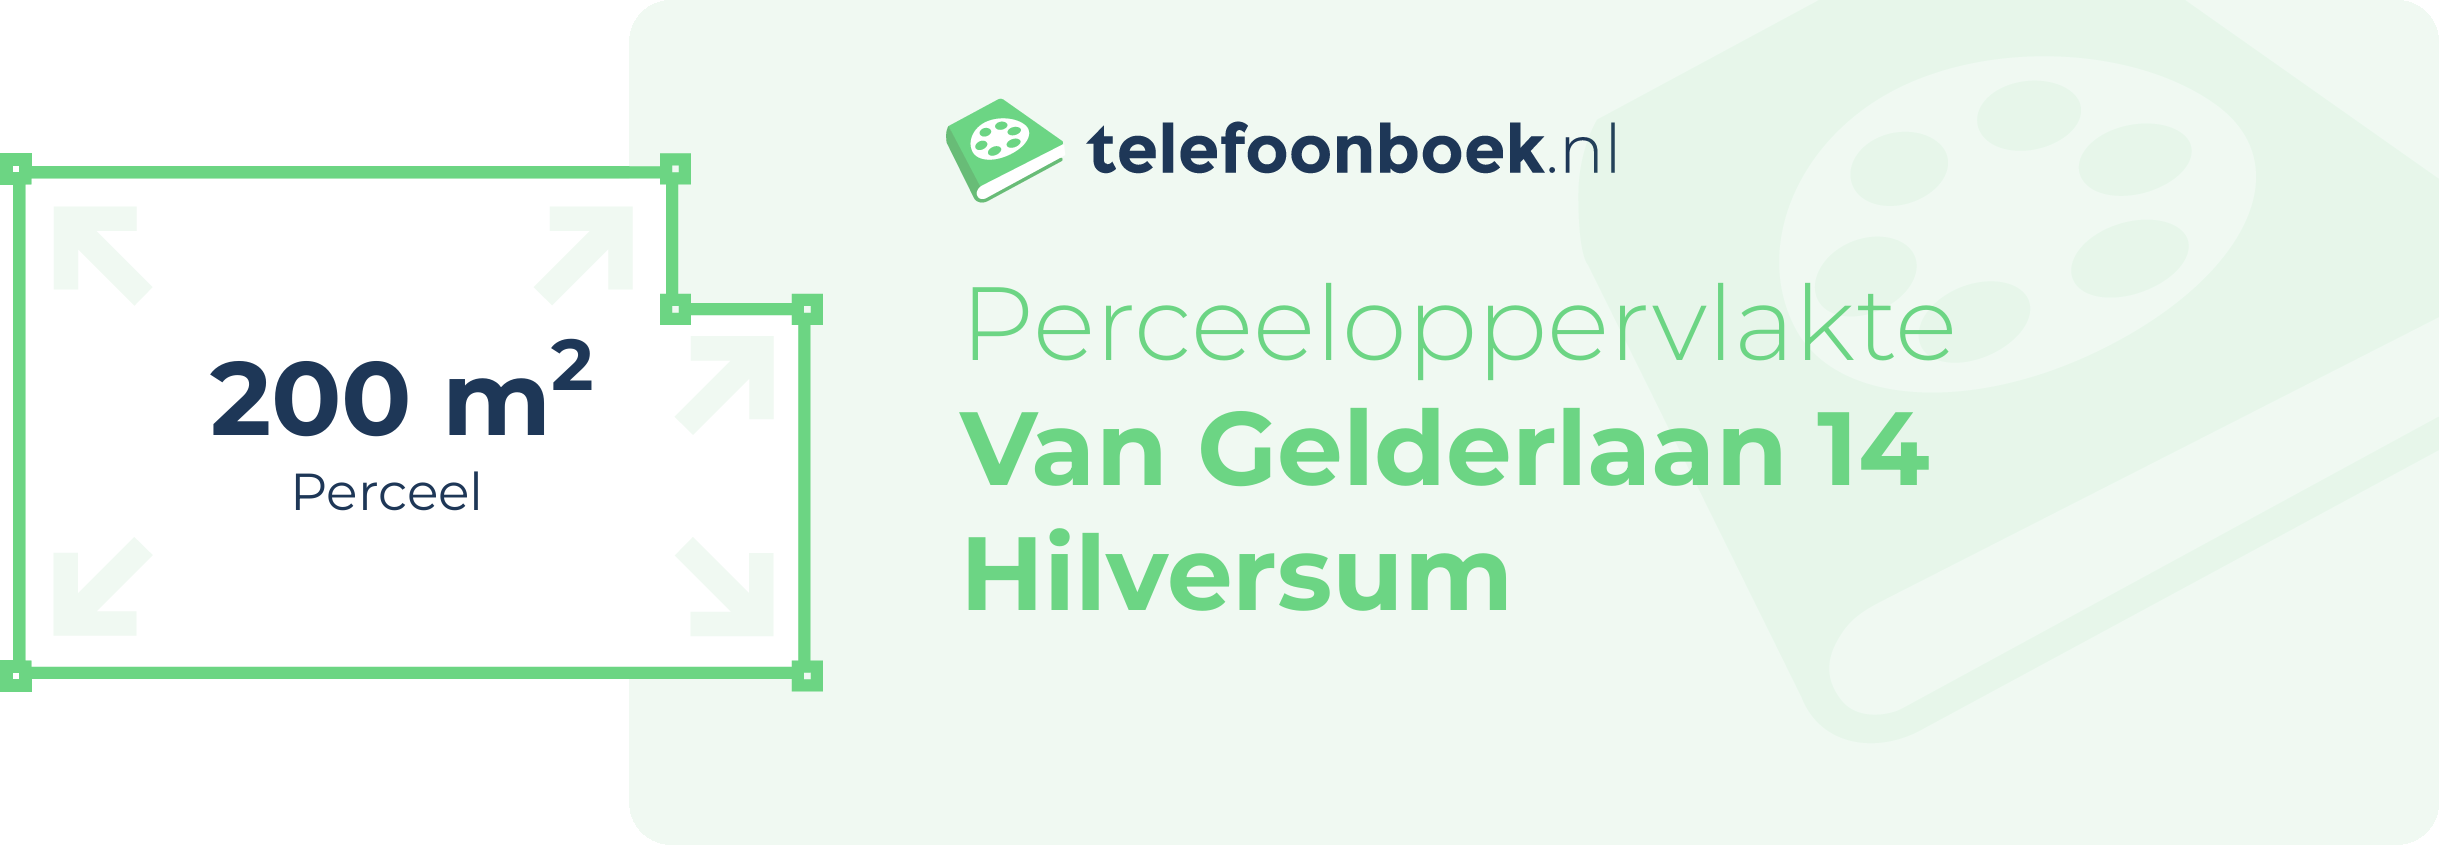 Perceeloppervlakte Van Gelderlaan 14 Hilversum